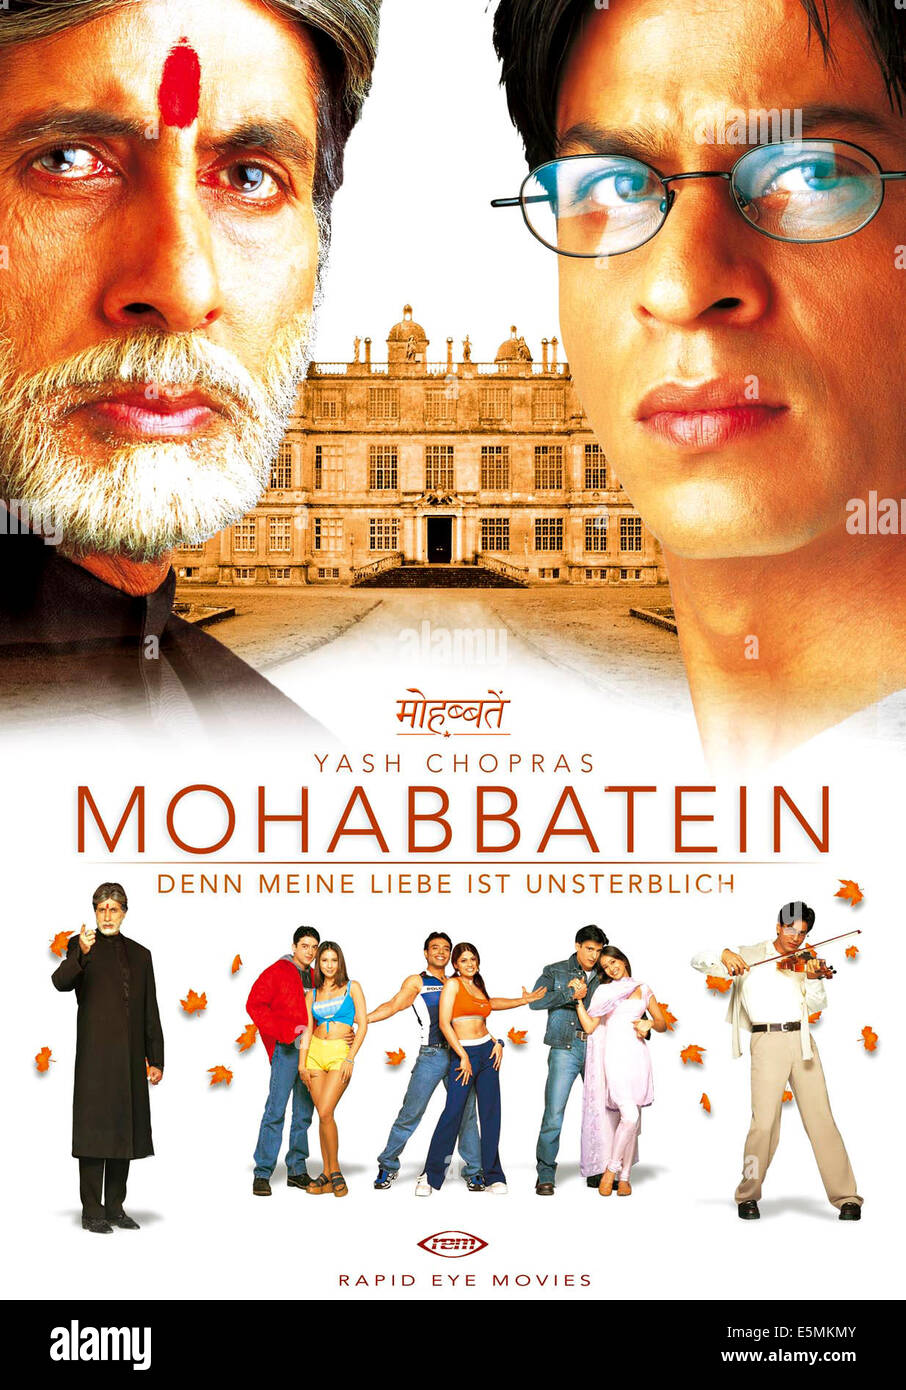 MOHABBATEIN, (aka Love Stories), en haut de gauche à droite : Amitabh Bachchan, Shahrukh Khan ; bas de gauche : Amitabh Bachchan, Jugal Banque D'Images